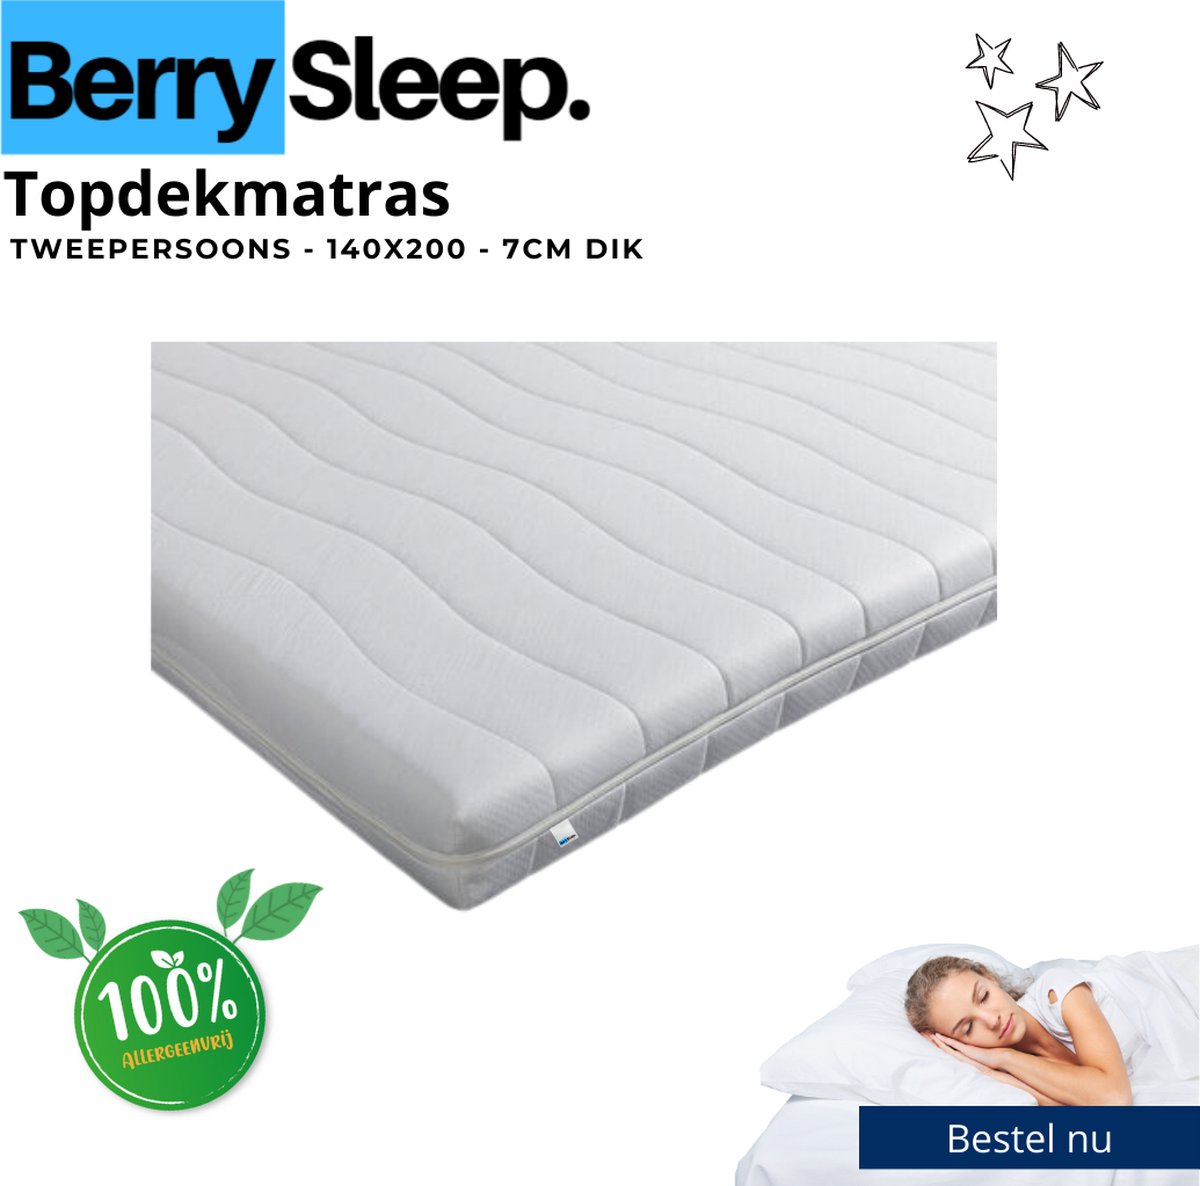 Berry Sleep® Hotel Deluxe Topper - 140x200 Topdekmatras - Koudschuim - Tencel - 7cm dik